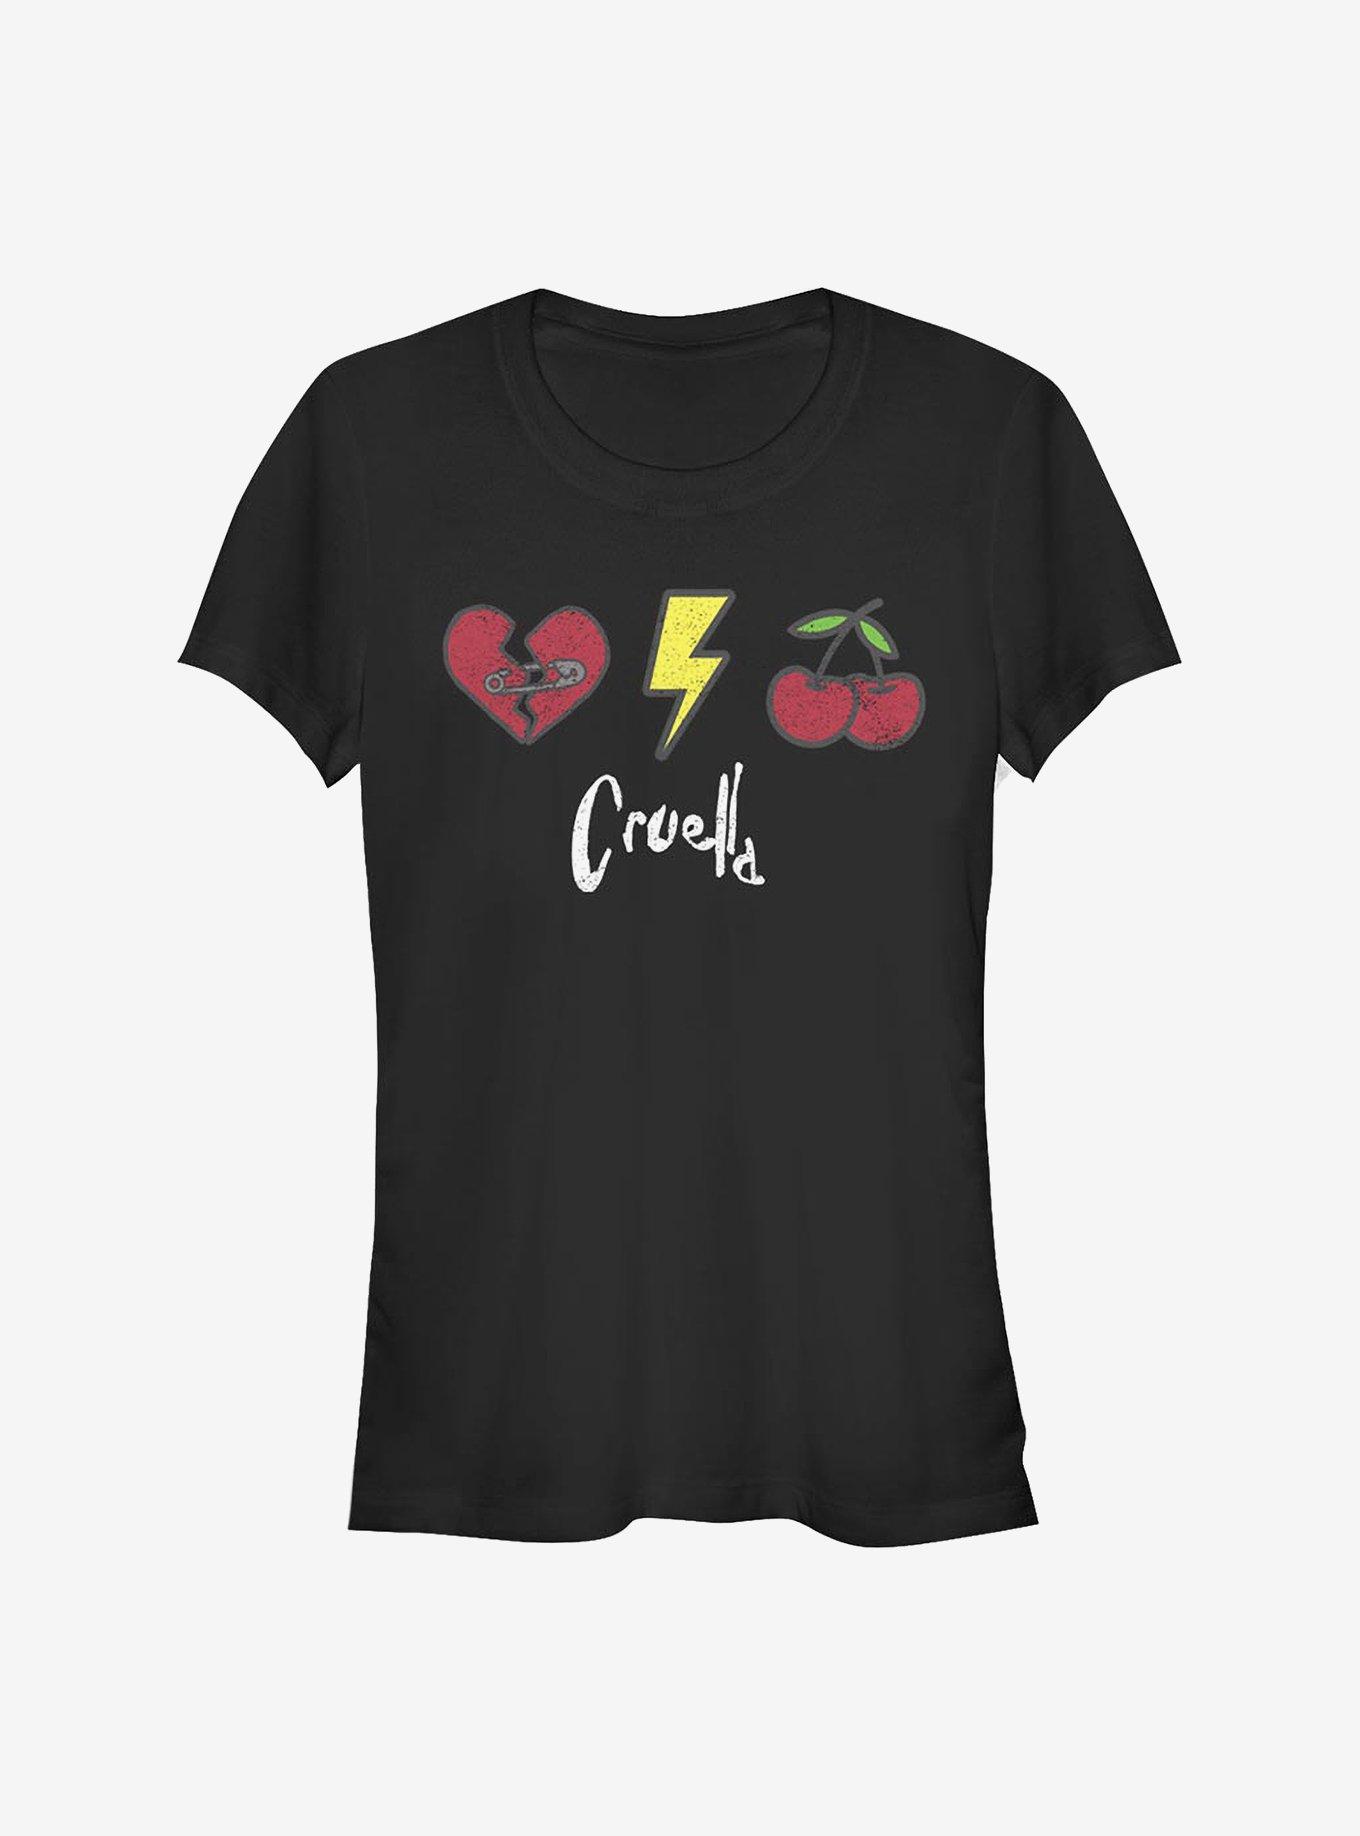 Disney Cruella Icons Girls T-Shirt, BLACK, hi-res